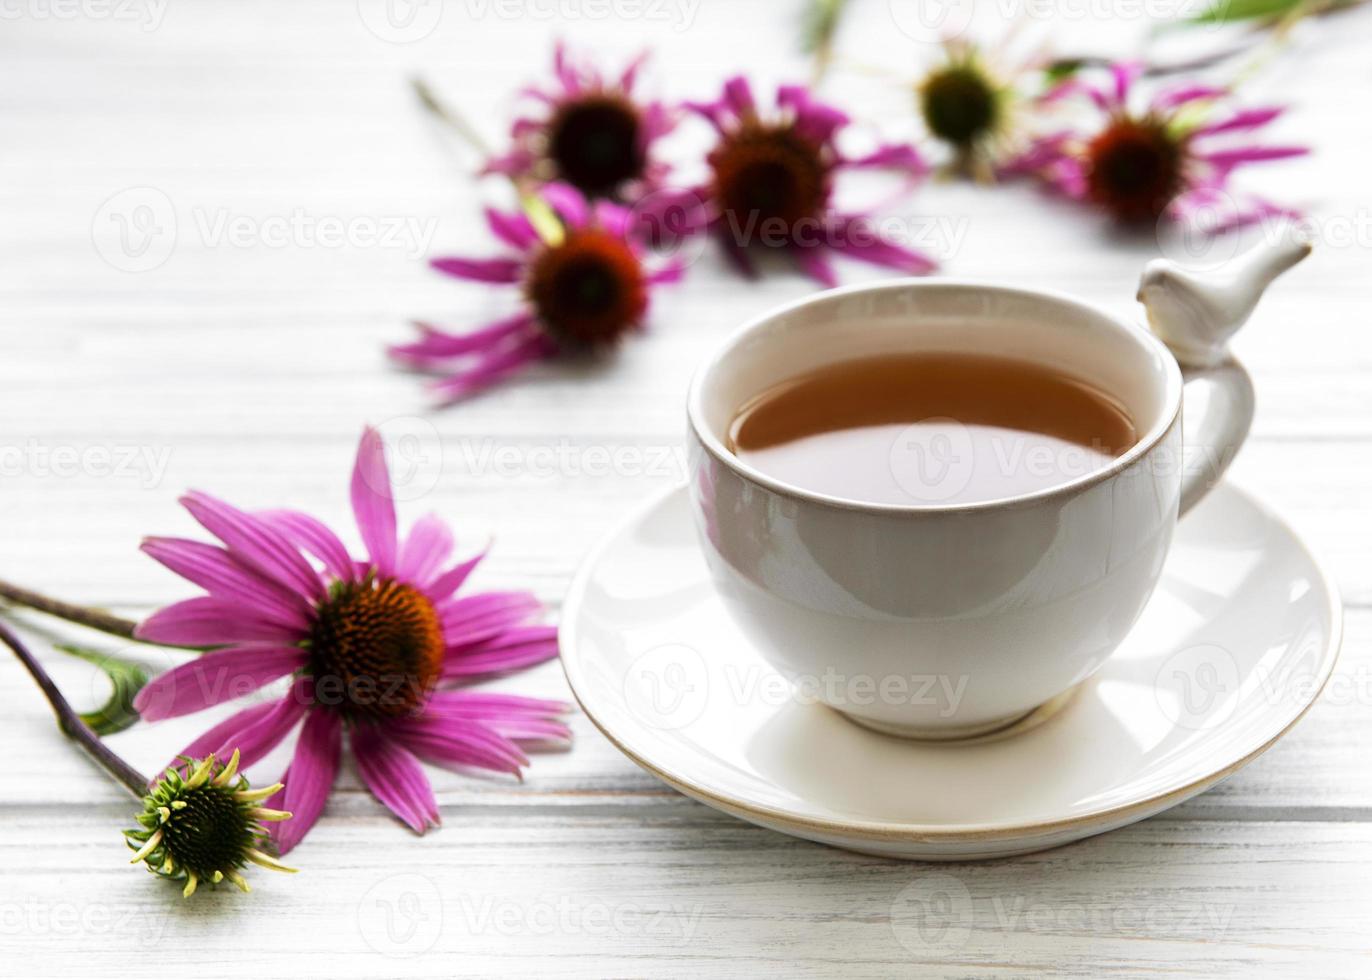 chá de equinácea com flores frescas. foto